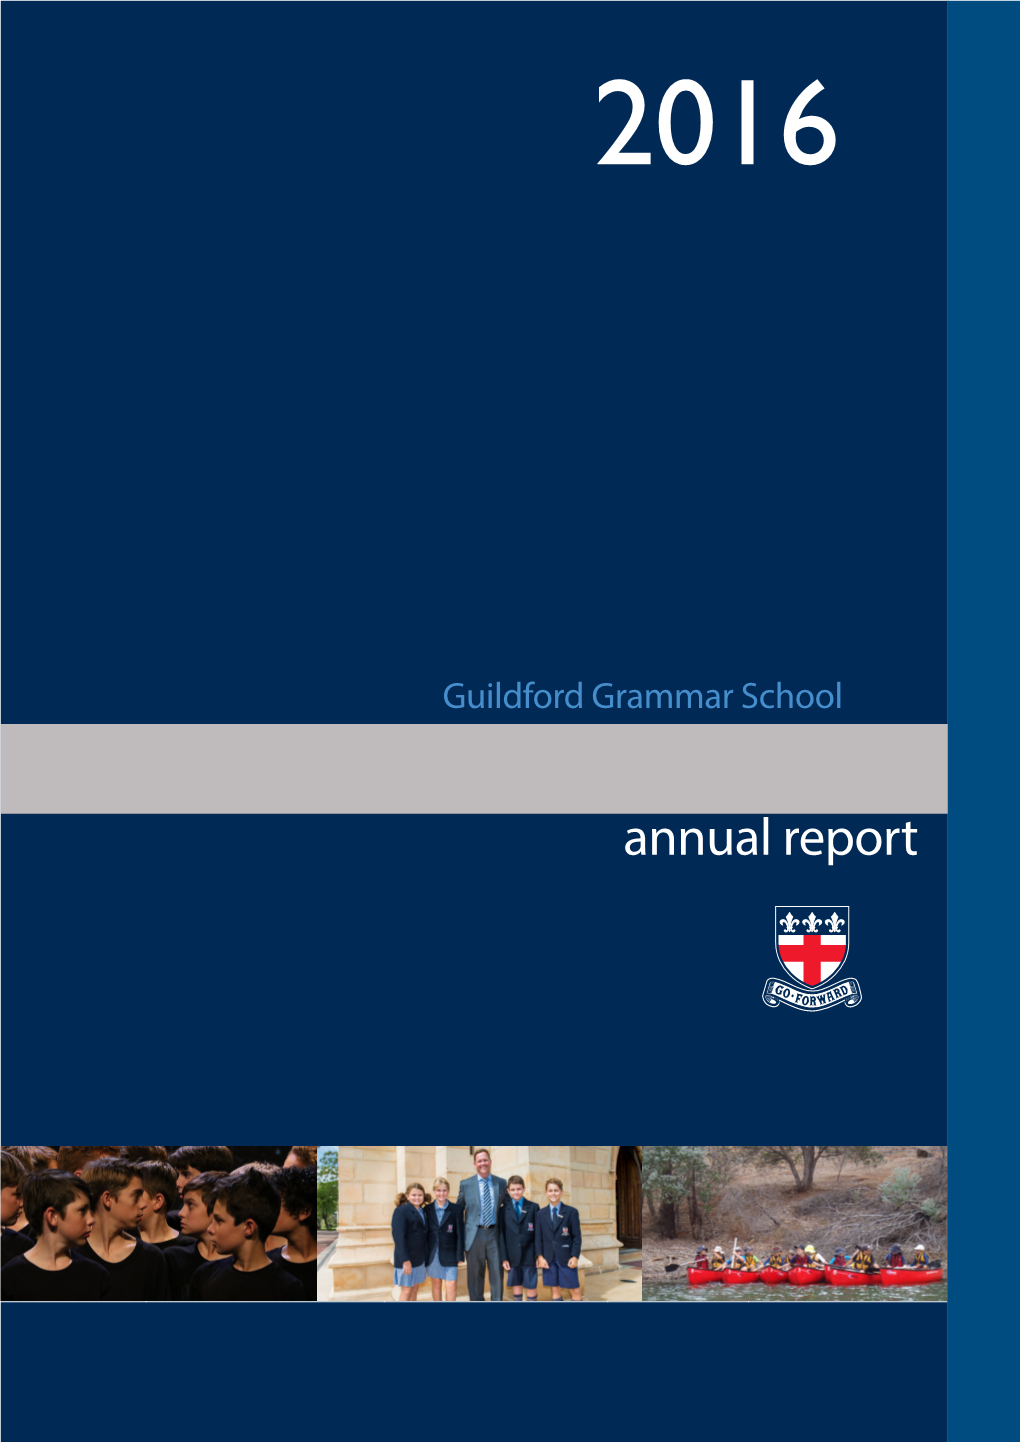 2016 Annual Report 2016 ANNUAL REPORT